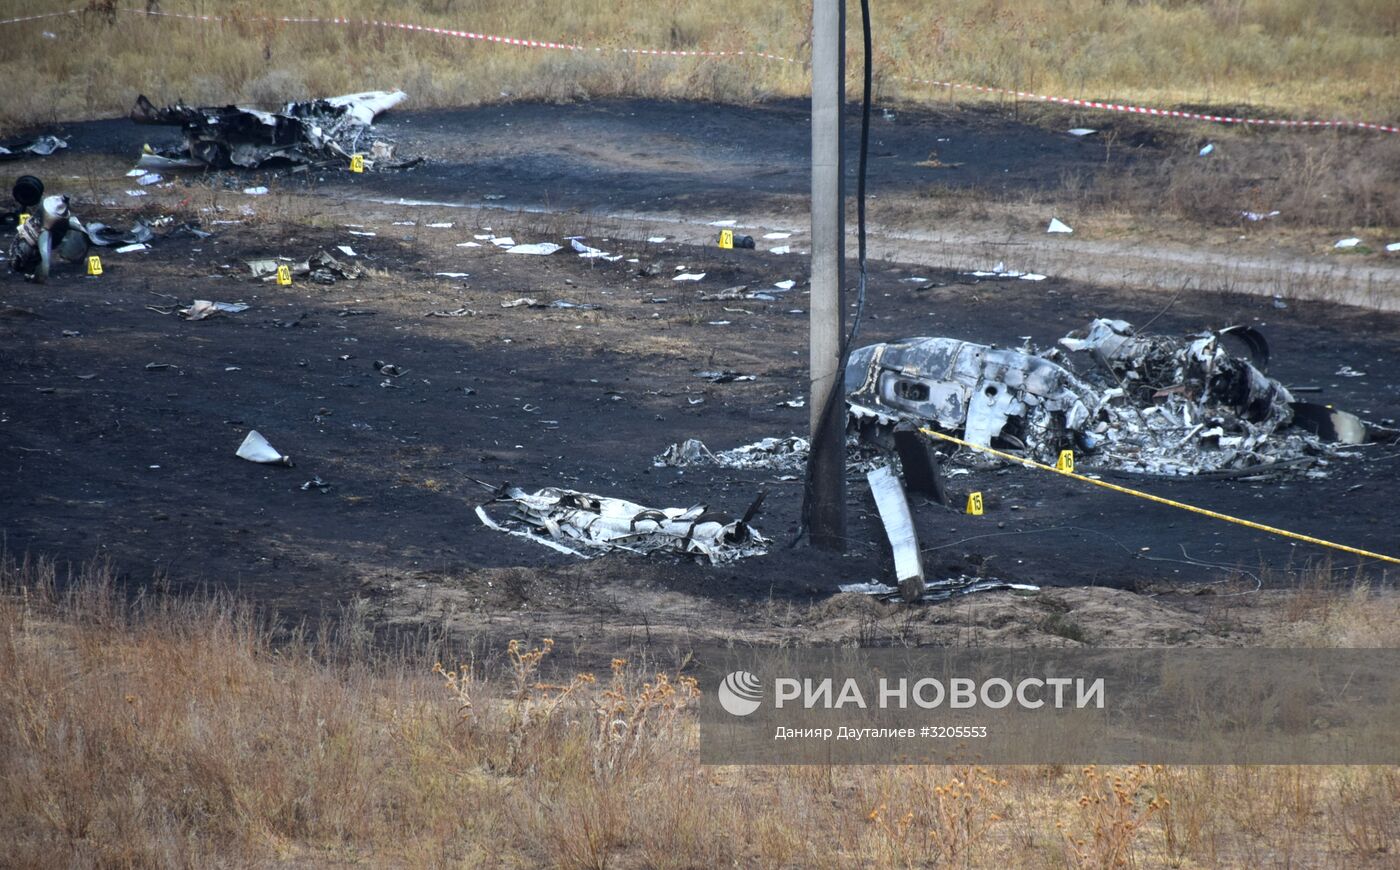 Ситуация на месте крушения самолета Ан-28 в Казахстане